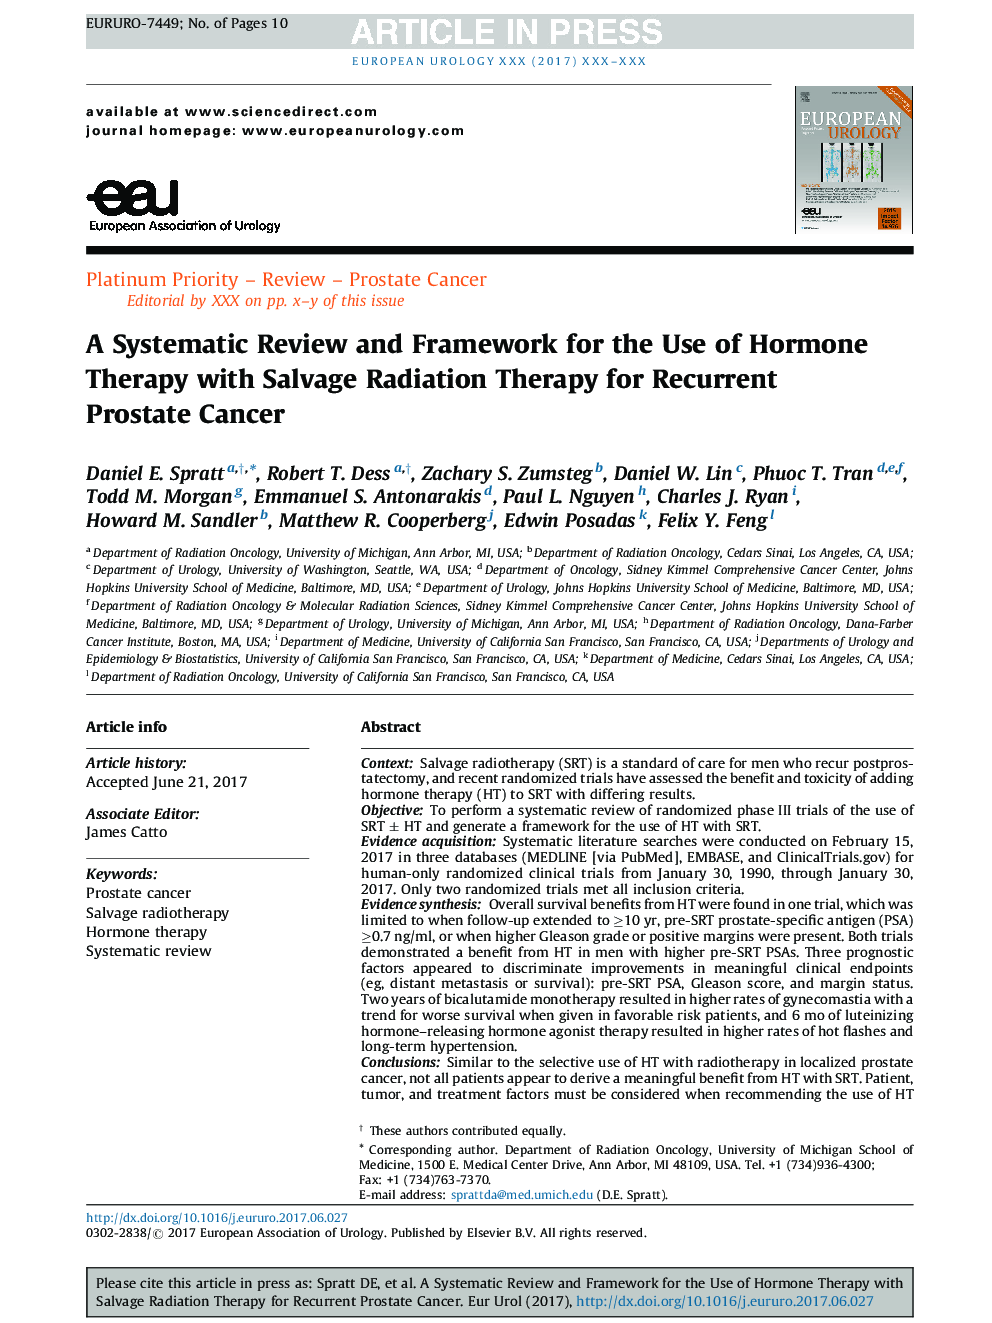 بررسی و چارچوب سیستماتیک برای استفاده از درمان هورمون با درمان رادیواکتیو برای سرطان پروستات مجدد 